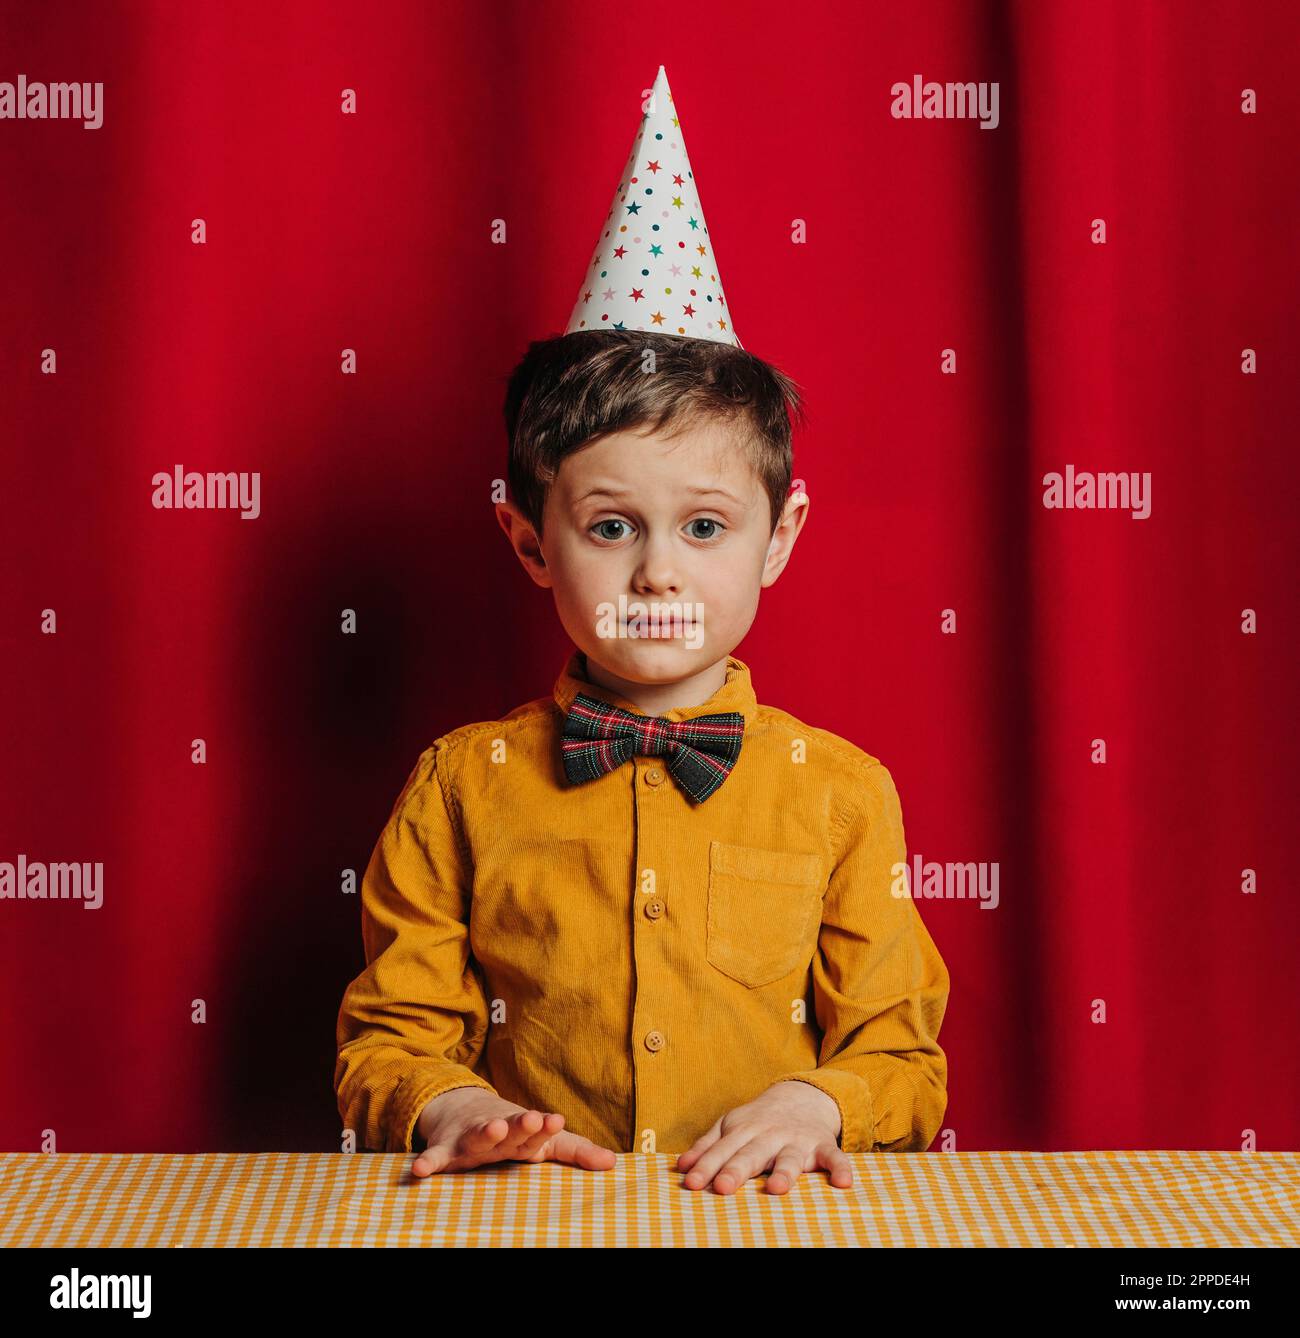 Garçon dans un chapeau d'anniversaire assis à une table devant un rideau rouge Banque D'Images